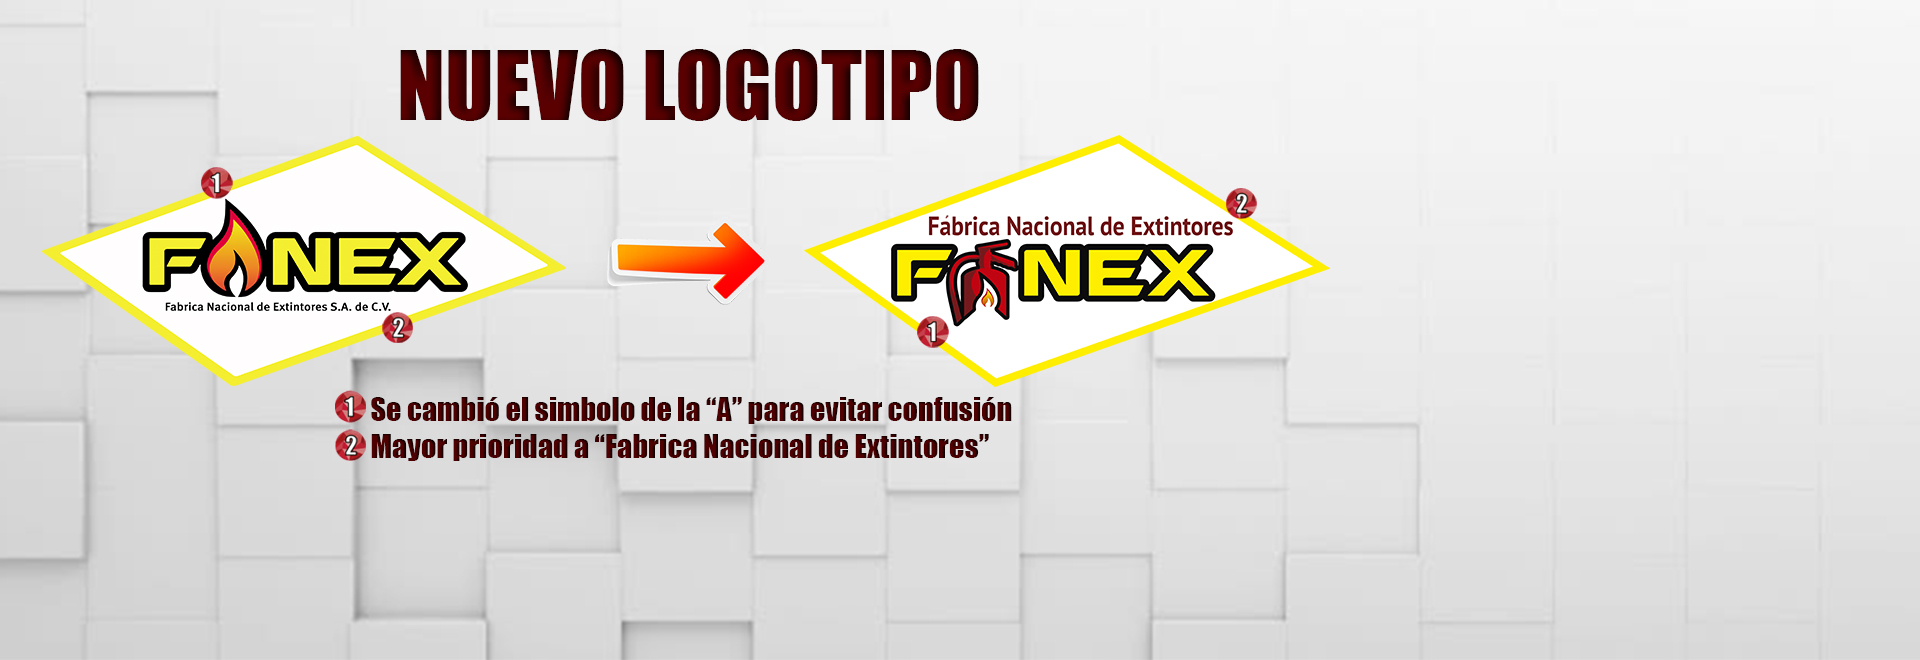 Nuevo logo fanex-fanex-extintores-extinguidores-logo